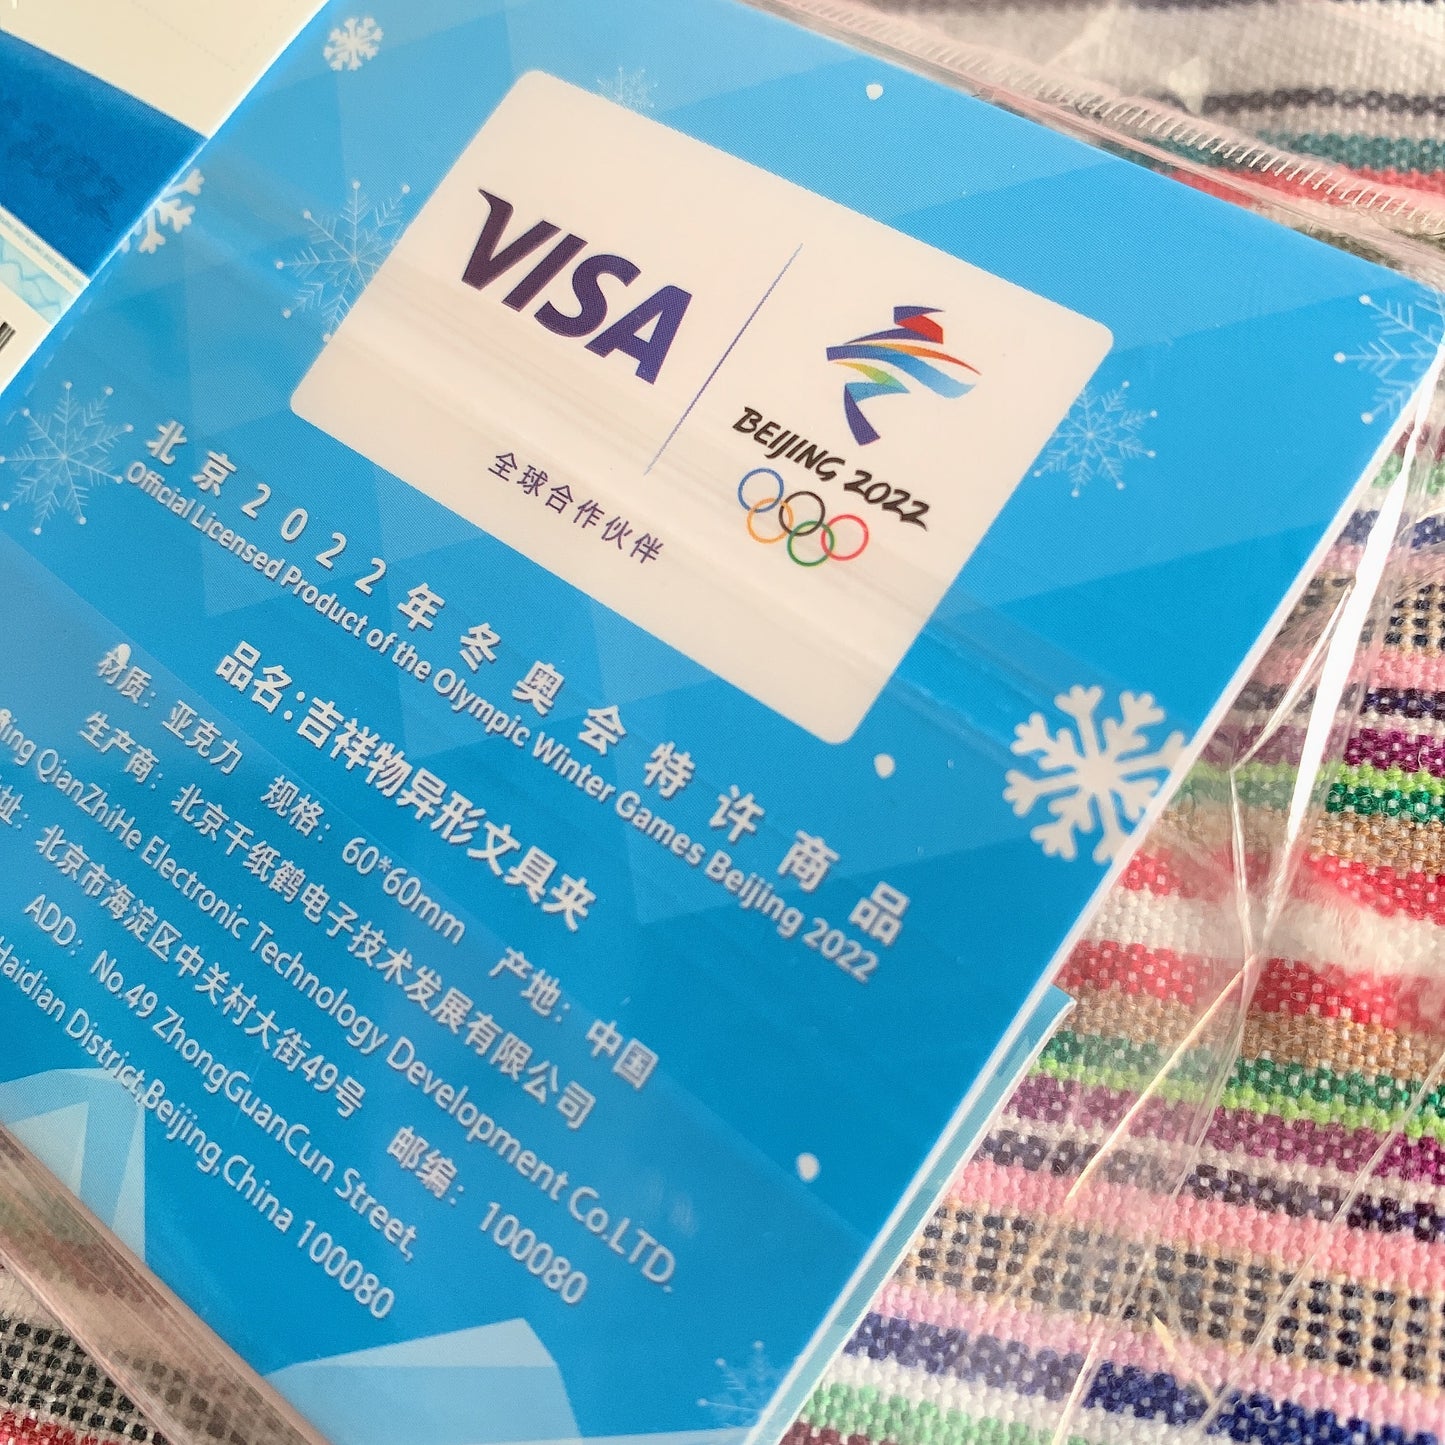 Beijing 2022 Olympic Winter Games Bing Dwen Dwen & Shuey Rhon Rhon clamp